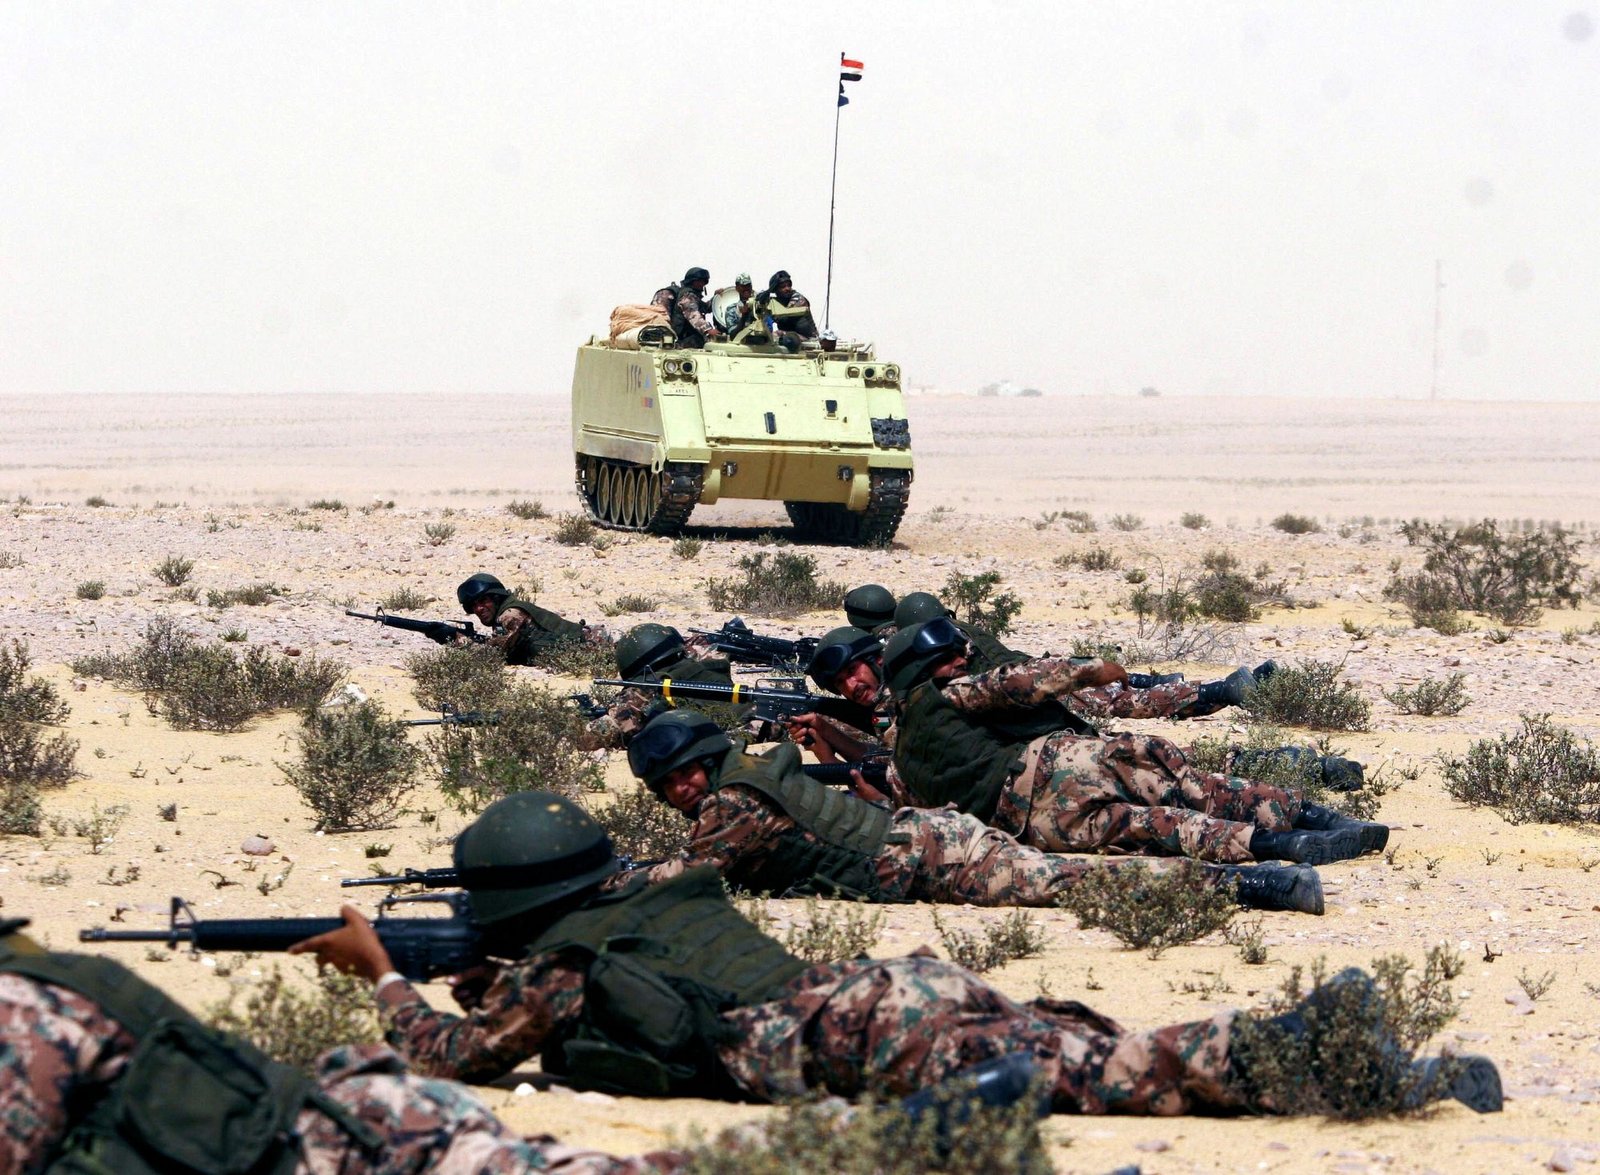  مقتل 6 مصريين على الحدود بين ليبيا وتونس